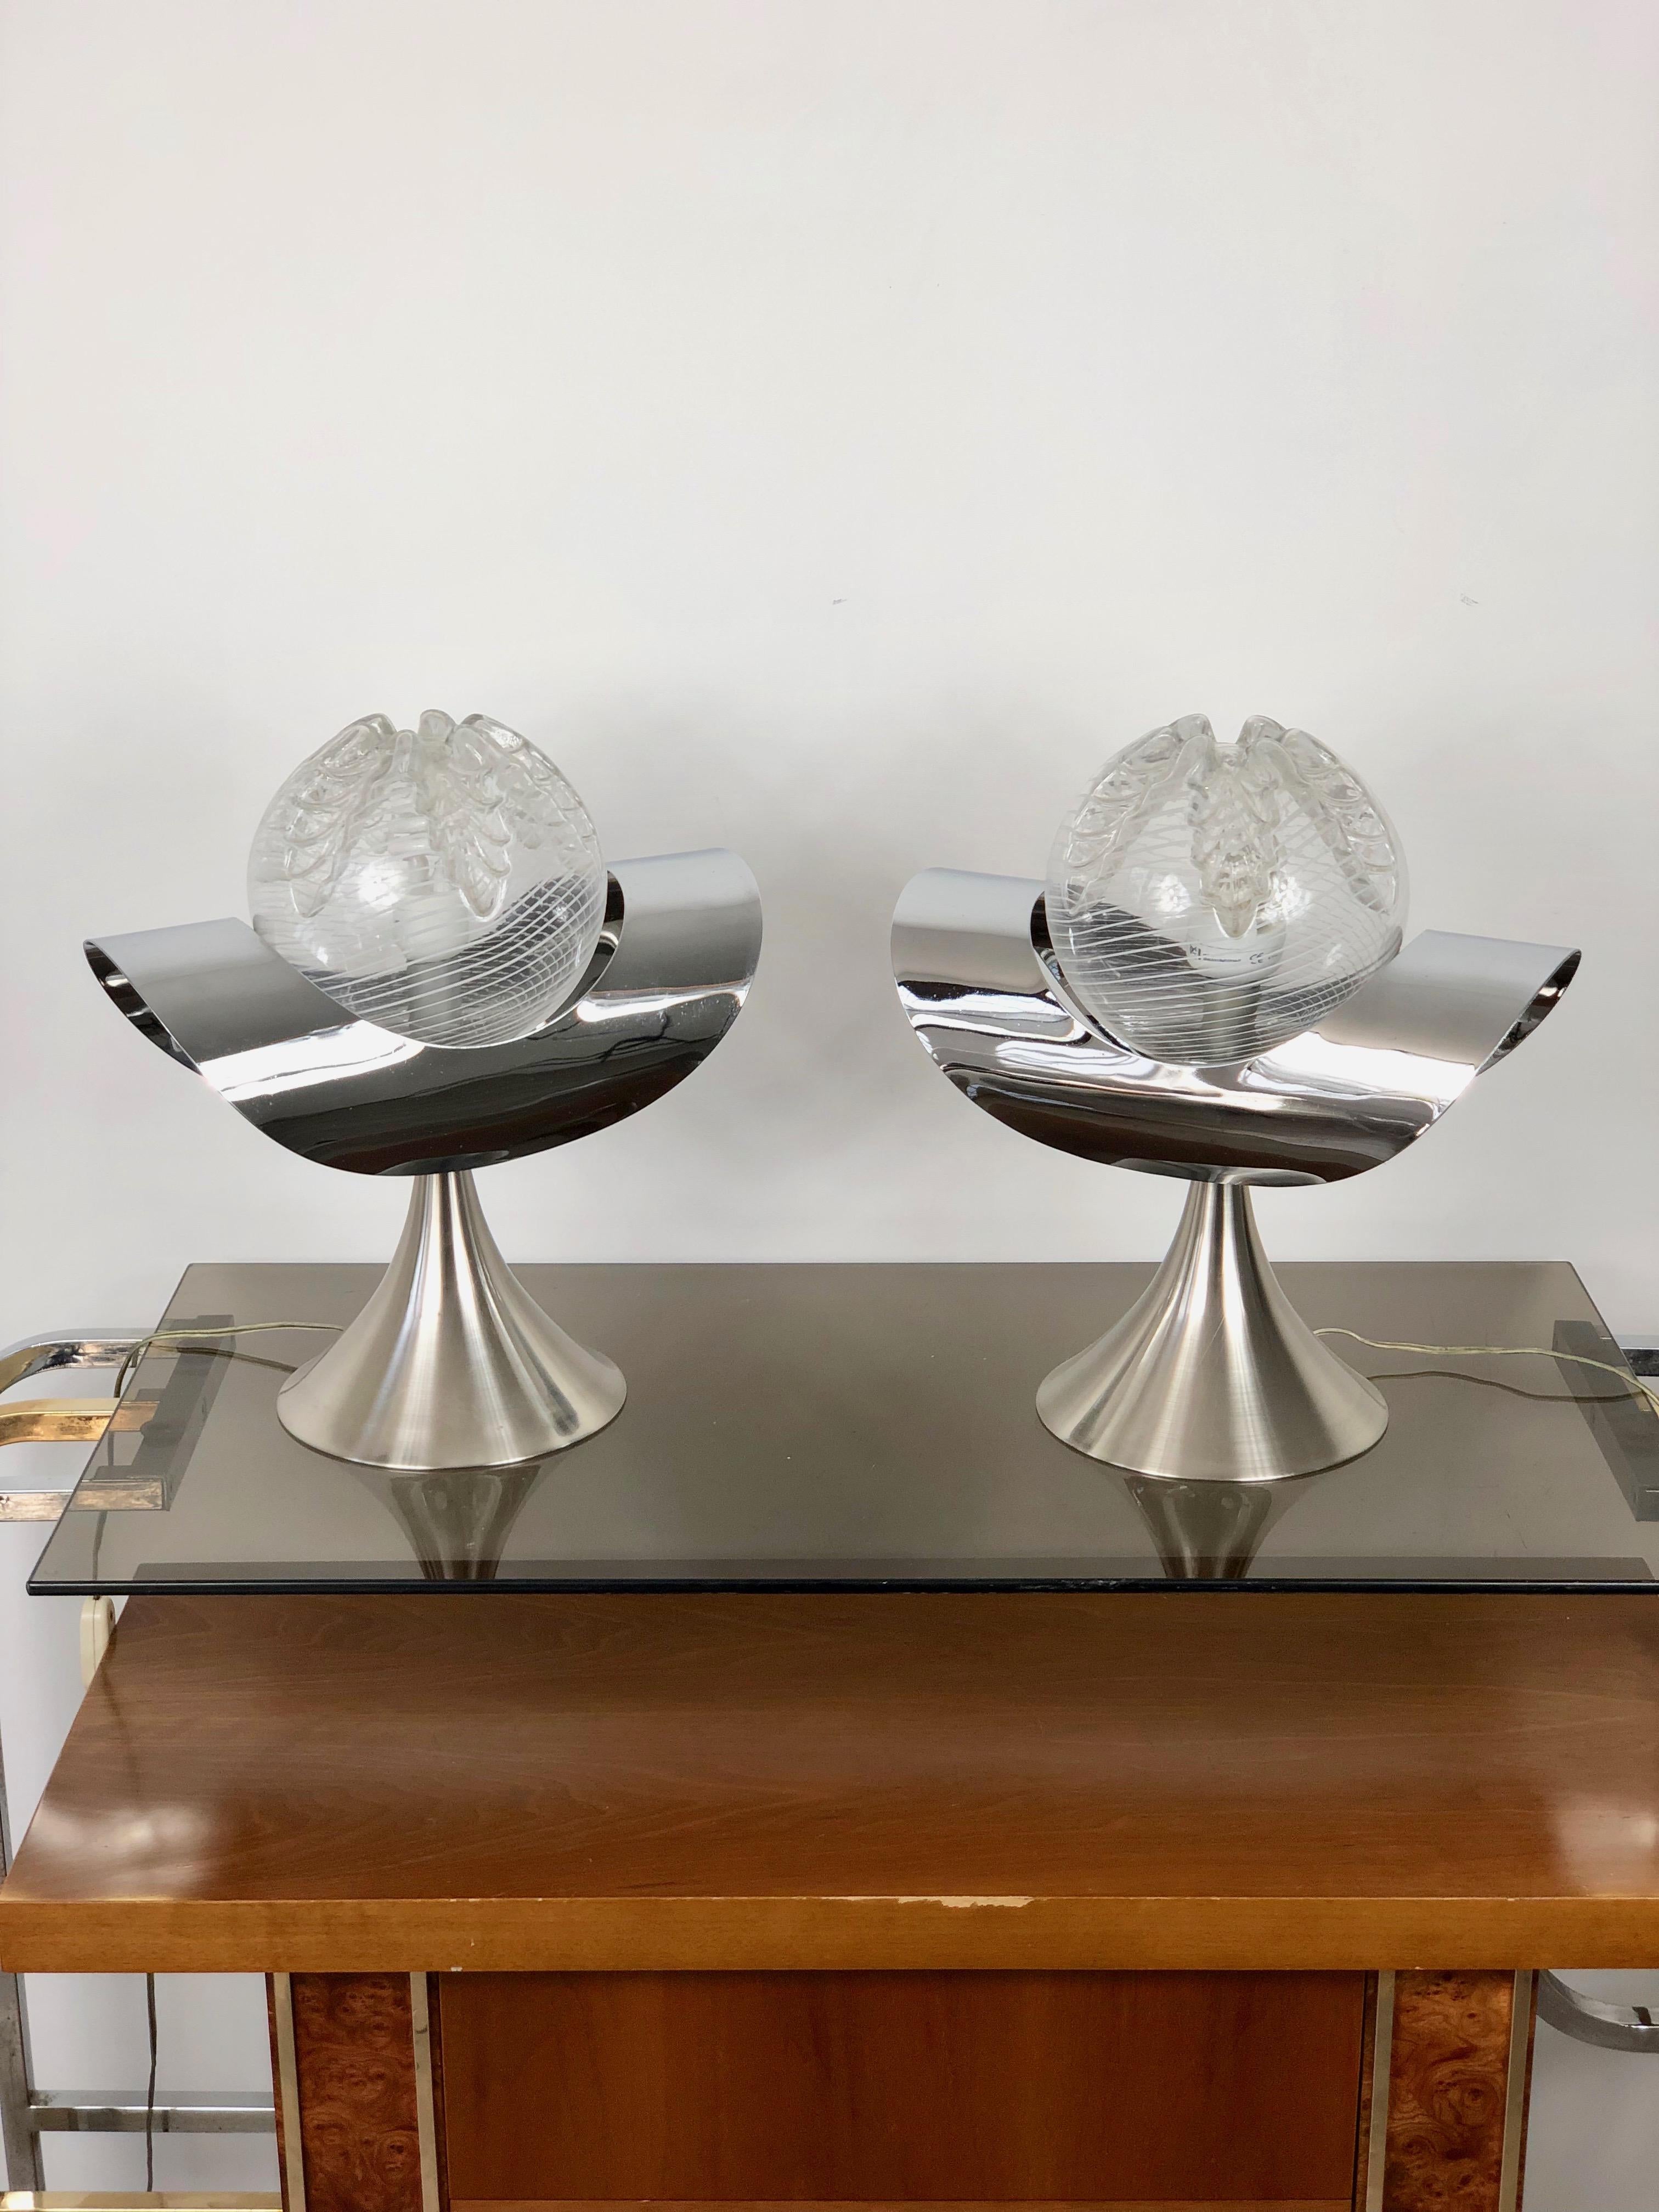 Paire de deux lampes de table en chrome et verre avec une base en acier. Lampe vintage typique de la période italienne des années 1970.